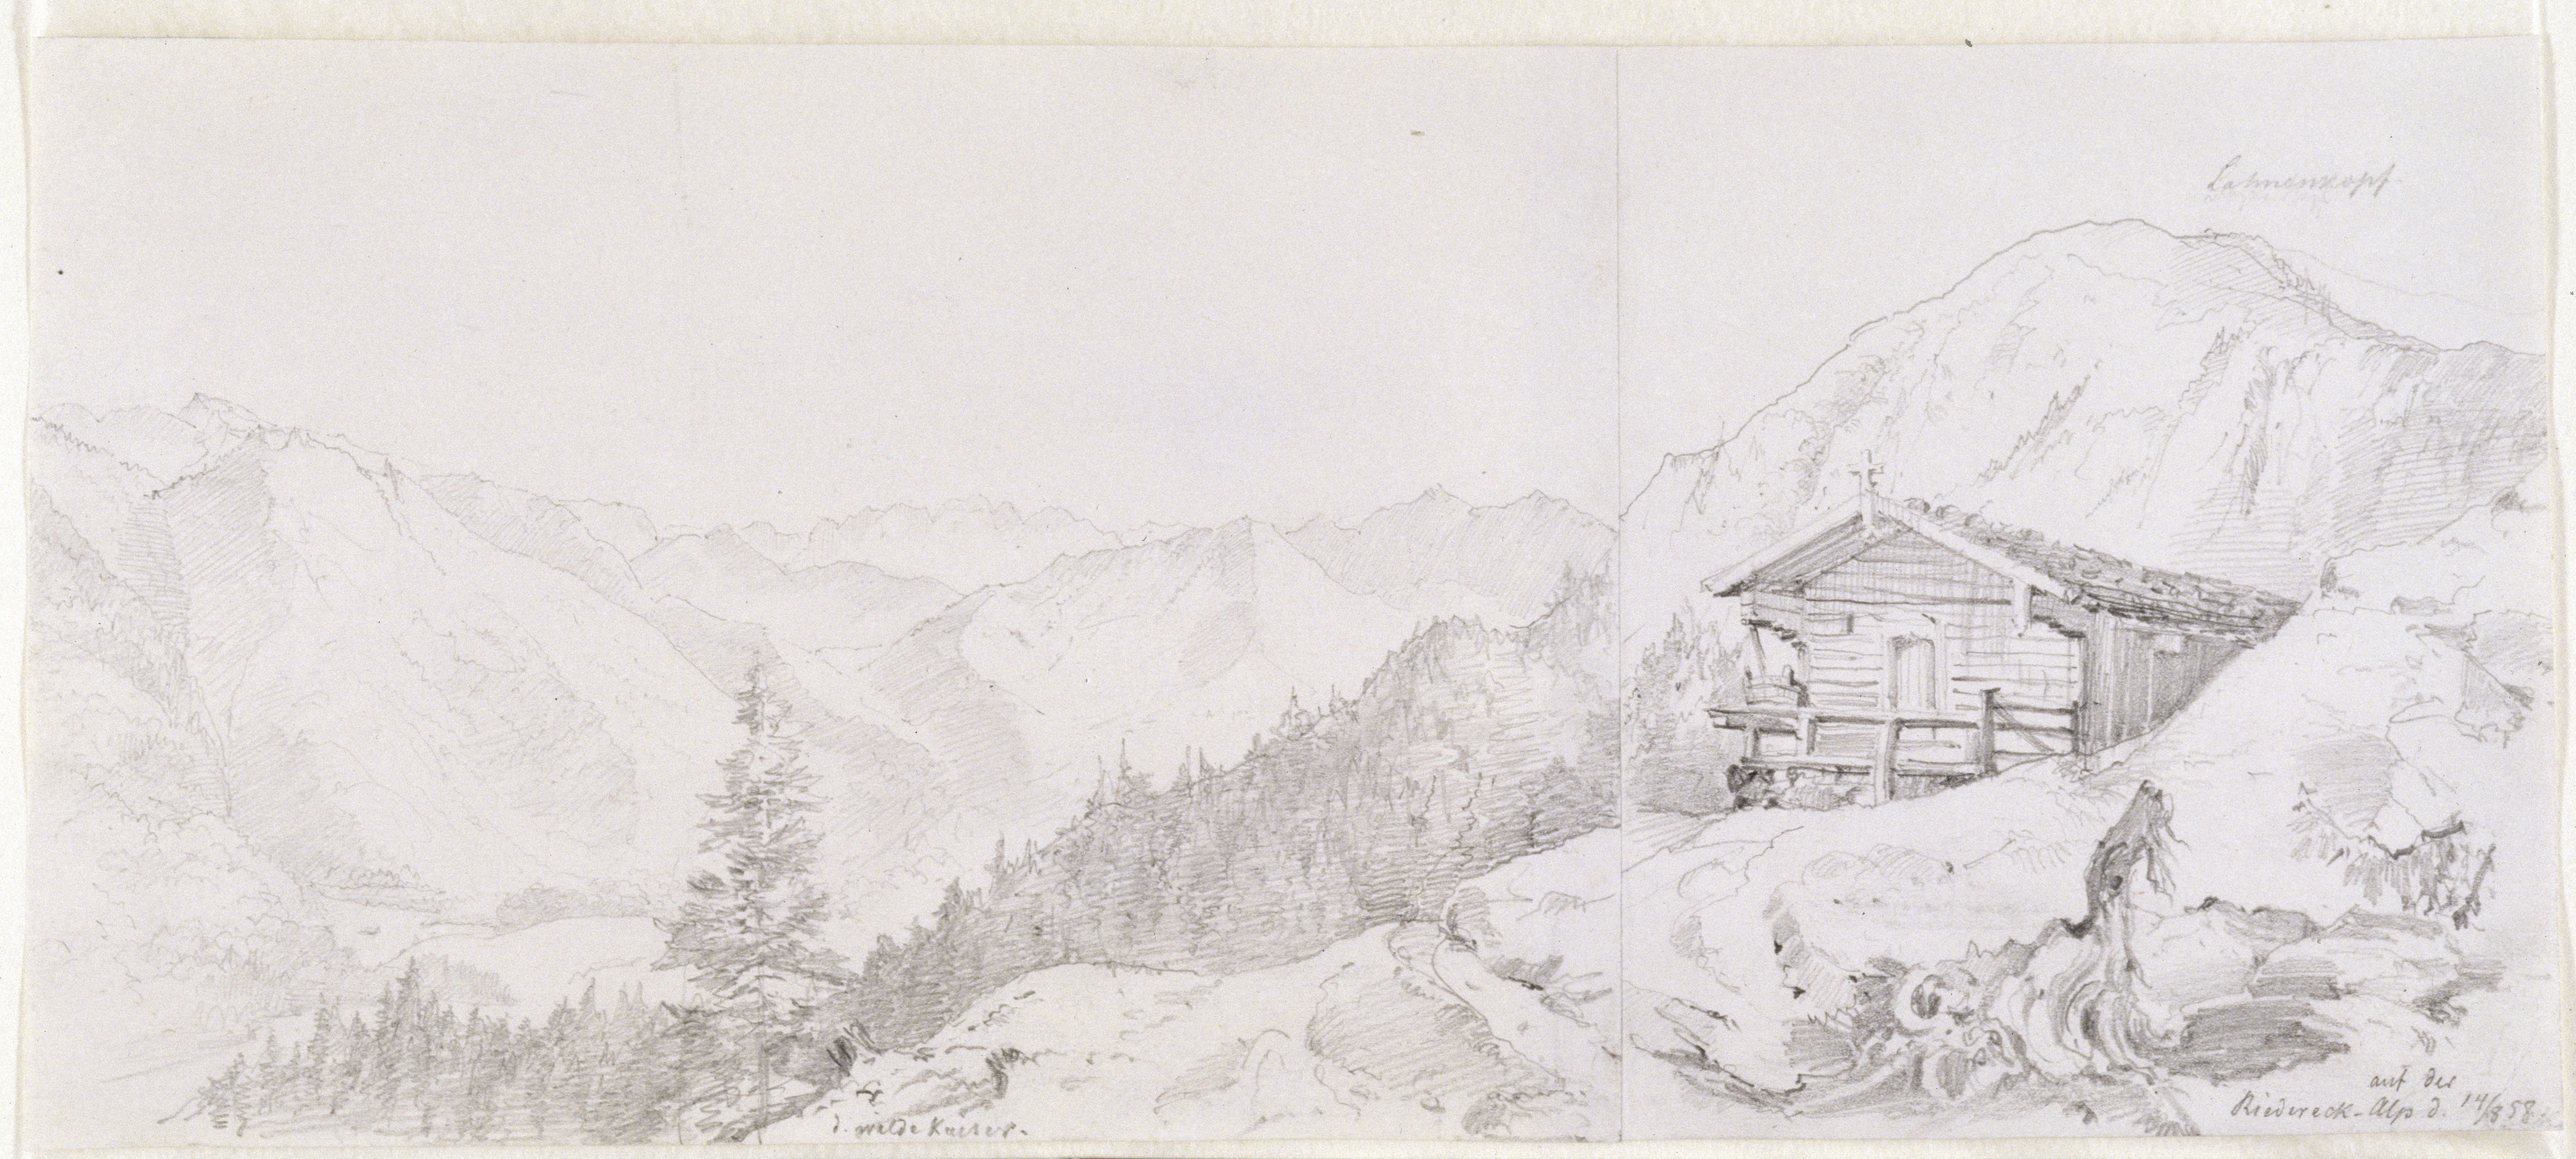 Stüler, Friedrich August: Alpenpanorama, 1858, SPSG, GK II (5) 3308. (Stiftung Preußische Schlösser und Gärten Berlin-Brandenburg CC BY-NC-SA)